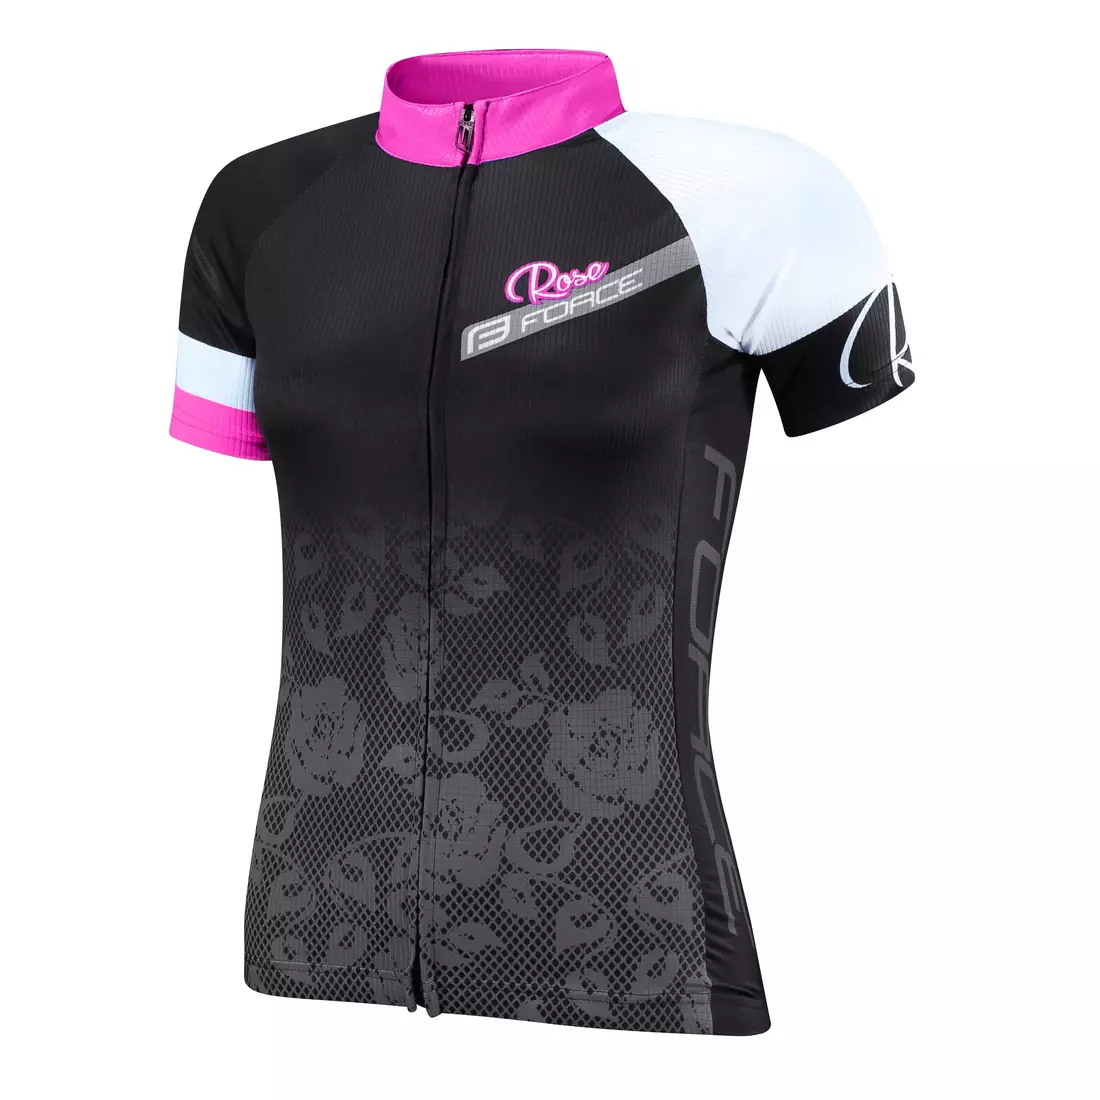 FORCE ROSE dámsky cyklistický dres 9001342 čierno-ružový